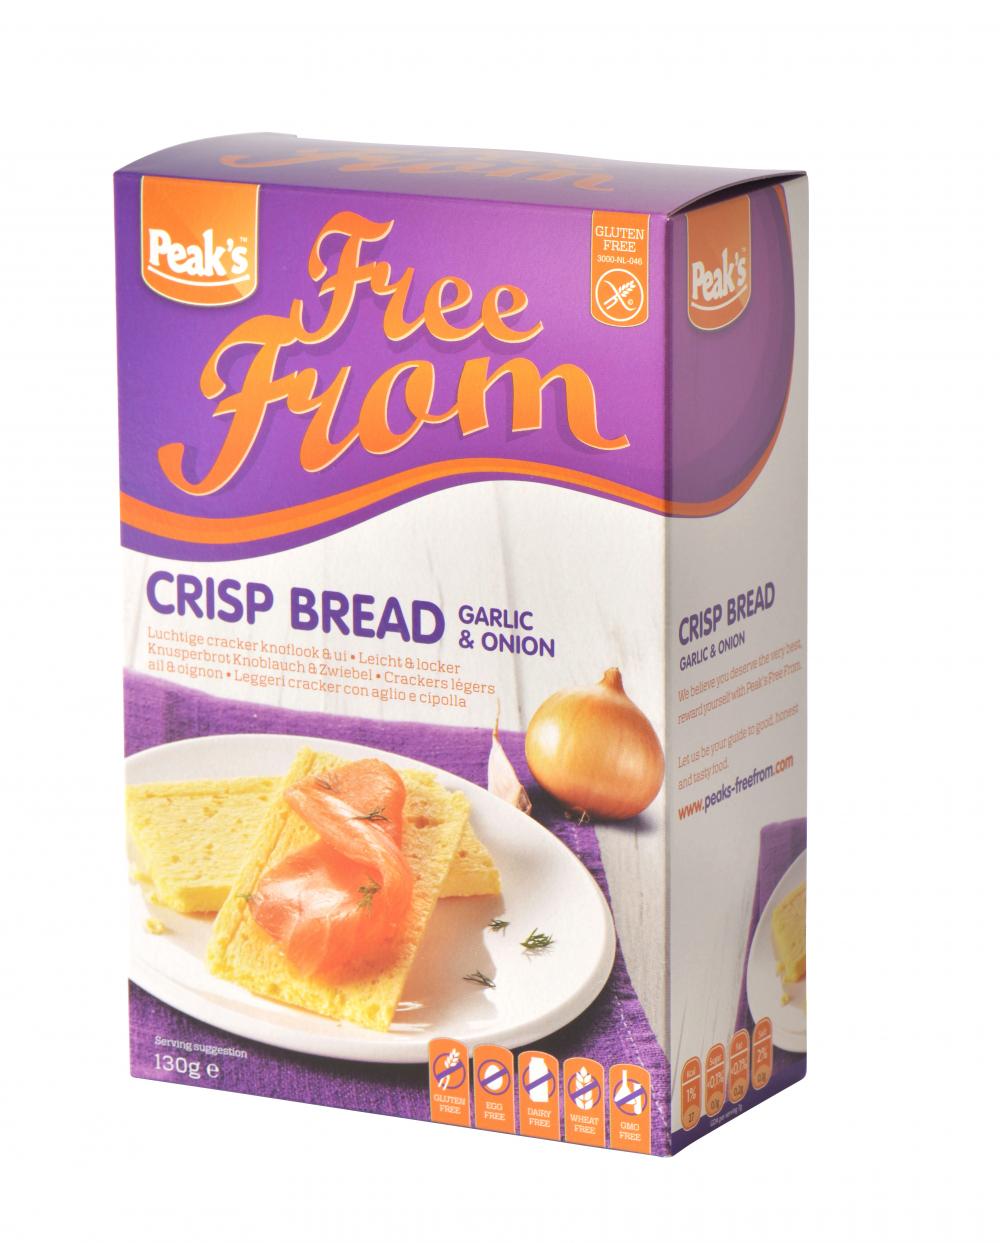 Peak's Free From Crisp Bread Garlic &amp; Onion 130g näkkileipä